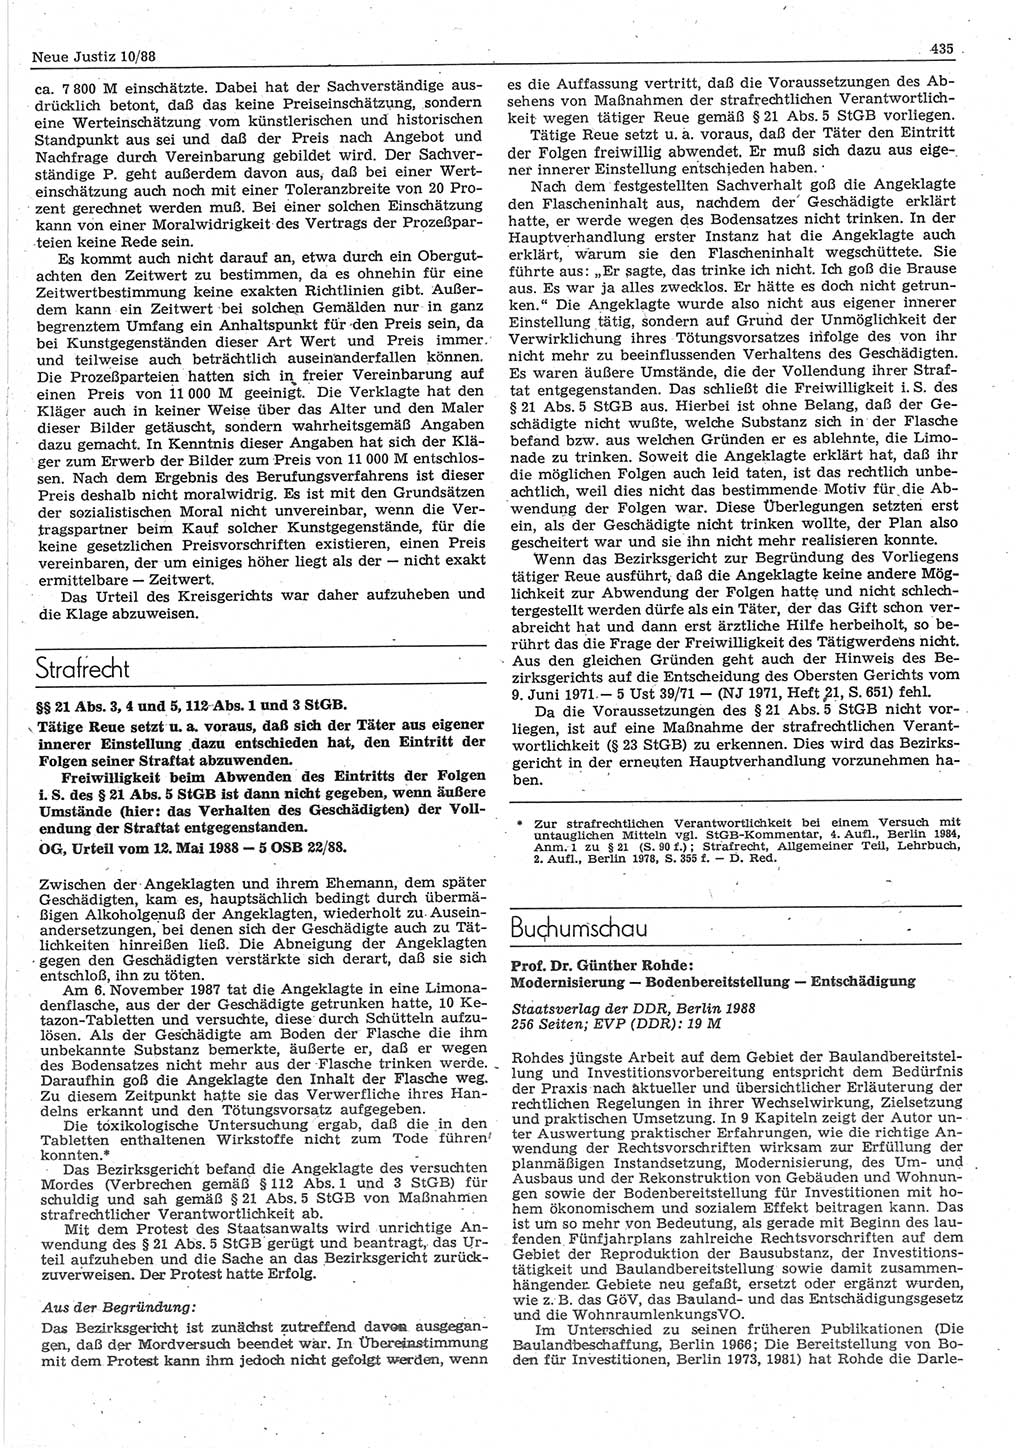 Neue Justiz (NJ), Zeitschrift für sozialistisches Recht und Gesetzlichkeit [Deutsche Demokratische Republik (DDR)], 42. Jahrgang 1988, Seite 435 (NJ DDR 1988, S. 435)